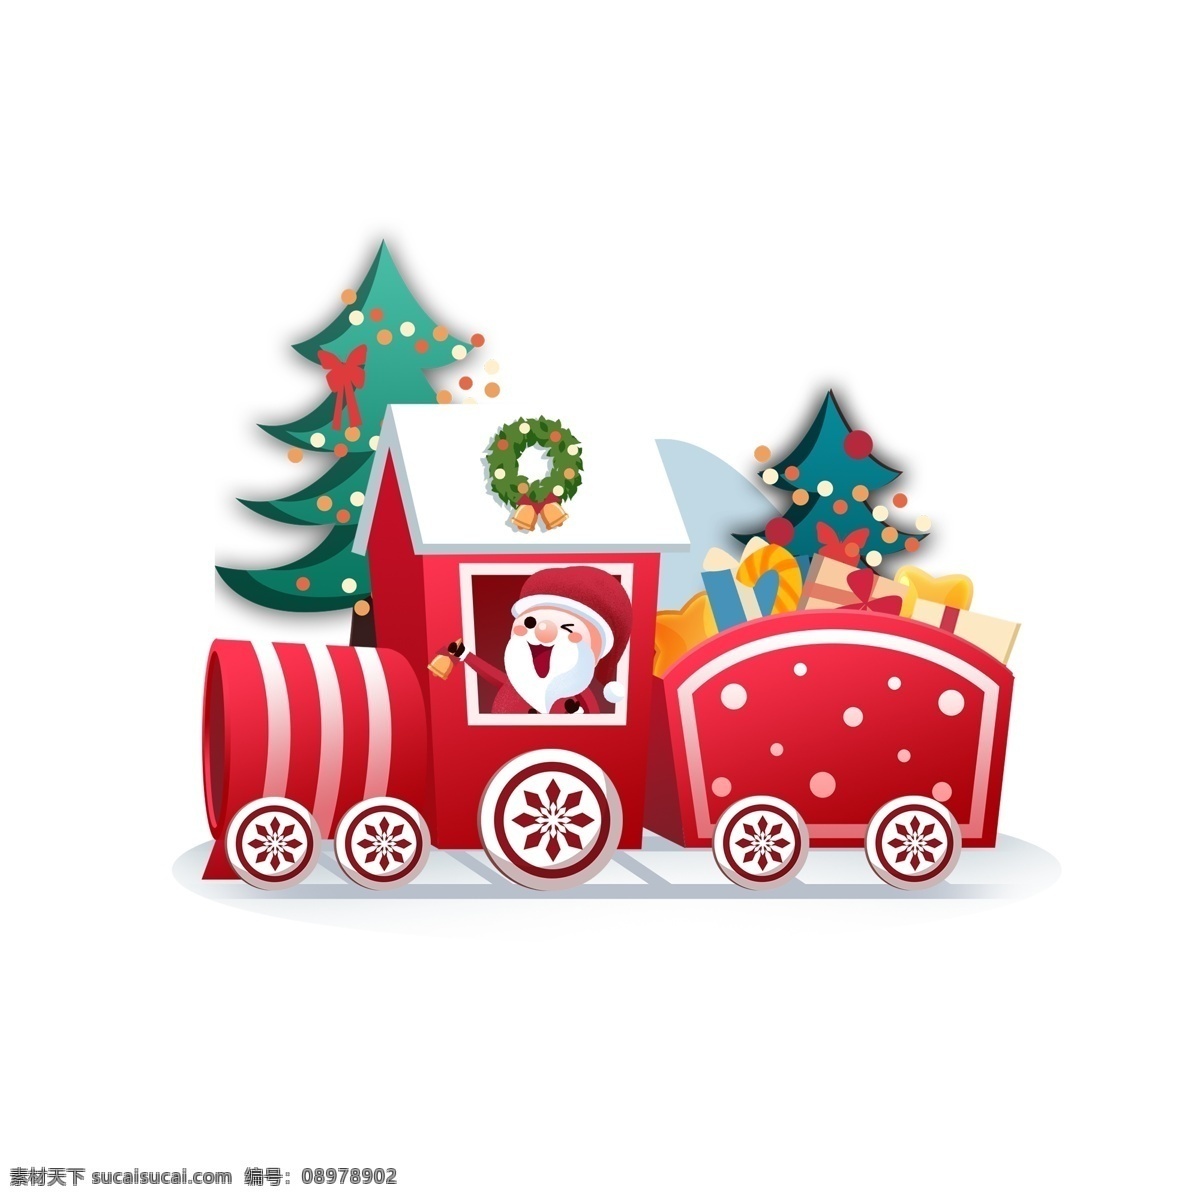 平安夜 圣诞节 圣诞老人 送礼 物 圣诞树 礼物 卡通 可爱 圣诞小火车 圣诞礼物 火车 五角星